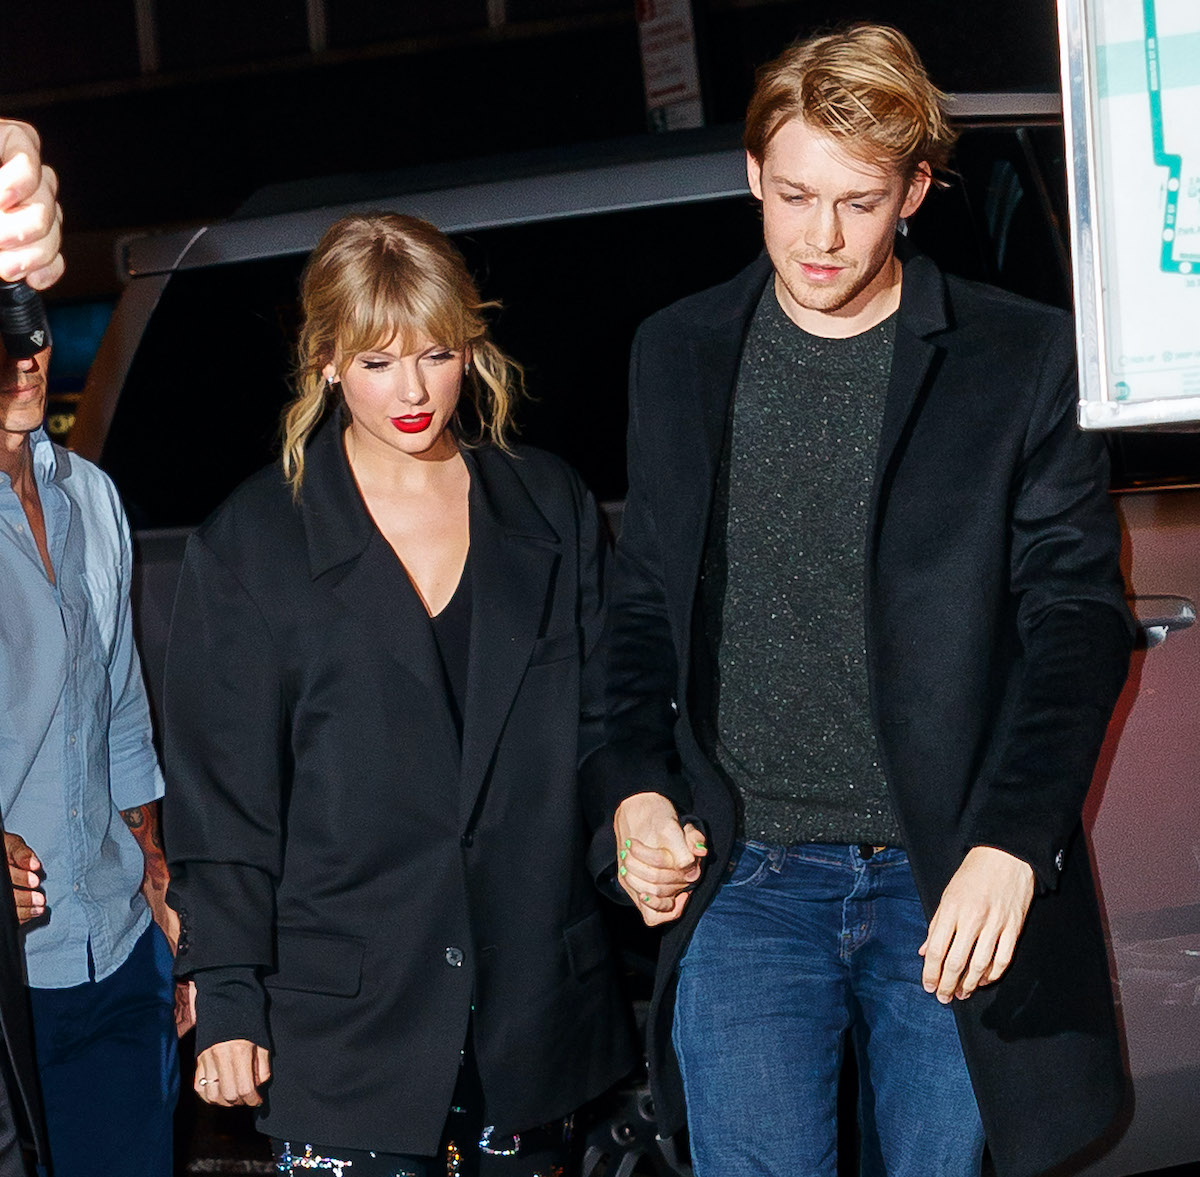 Taylor Swift holding hands with her boyfriend Joe Alwyn